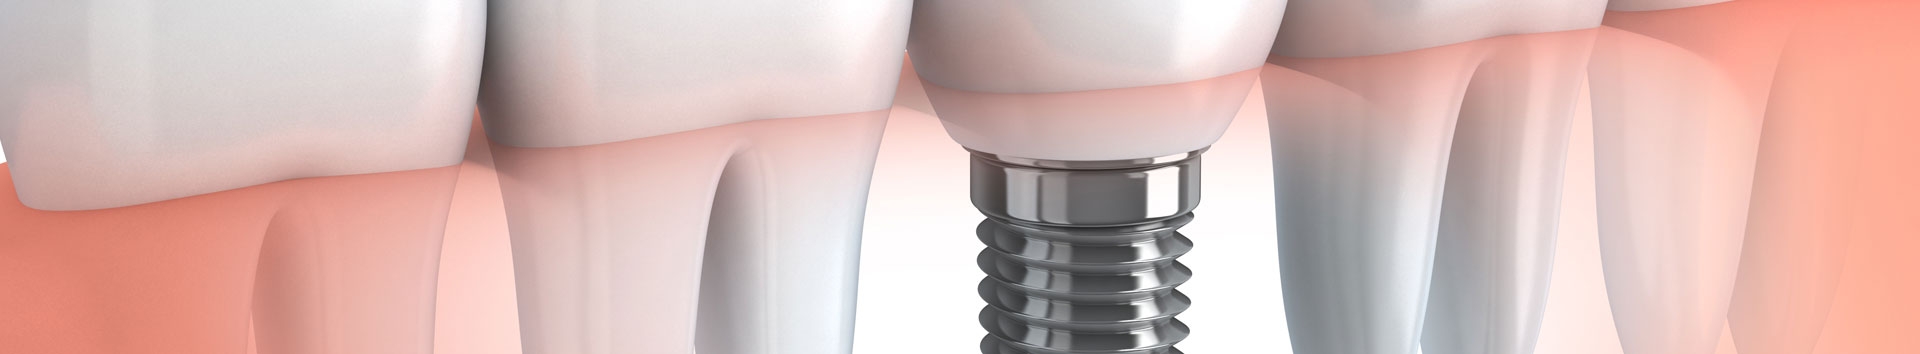 Que cuidados devo ter com o implante dental?